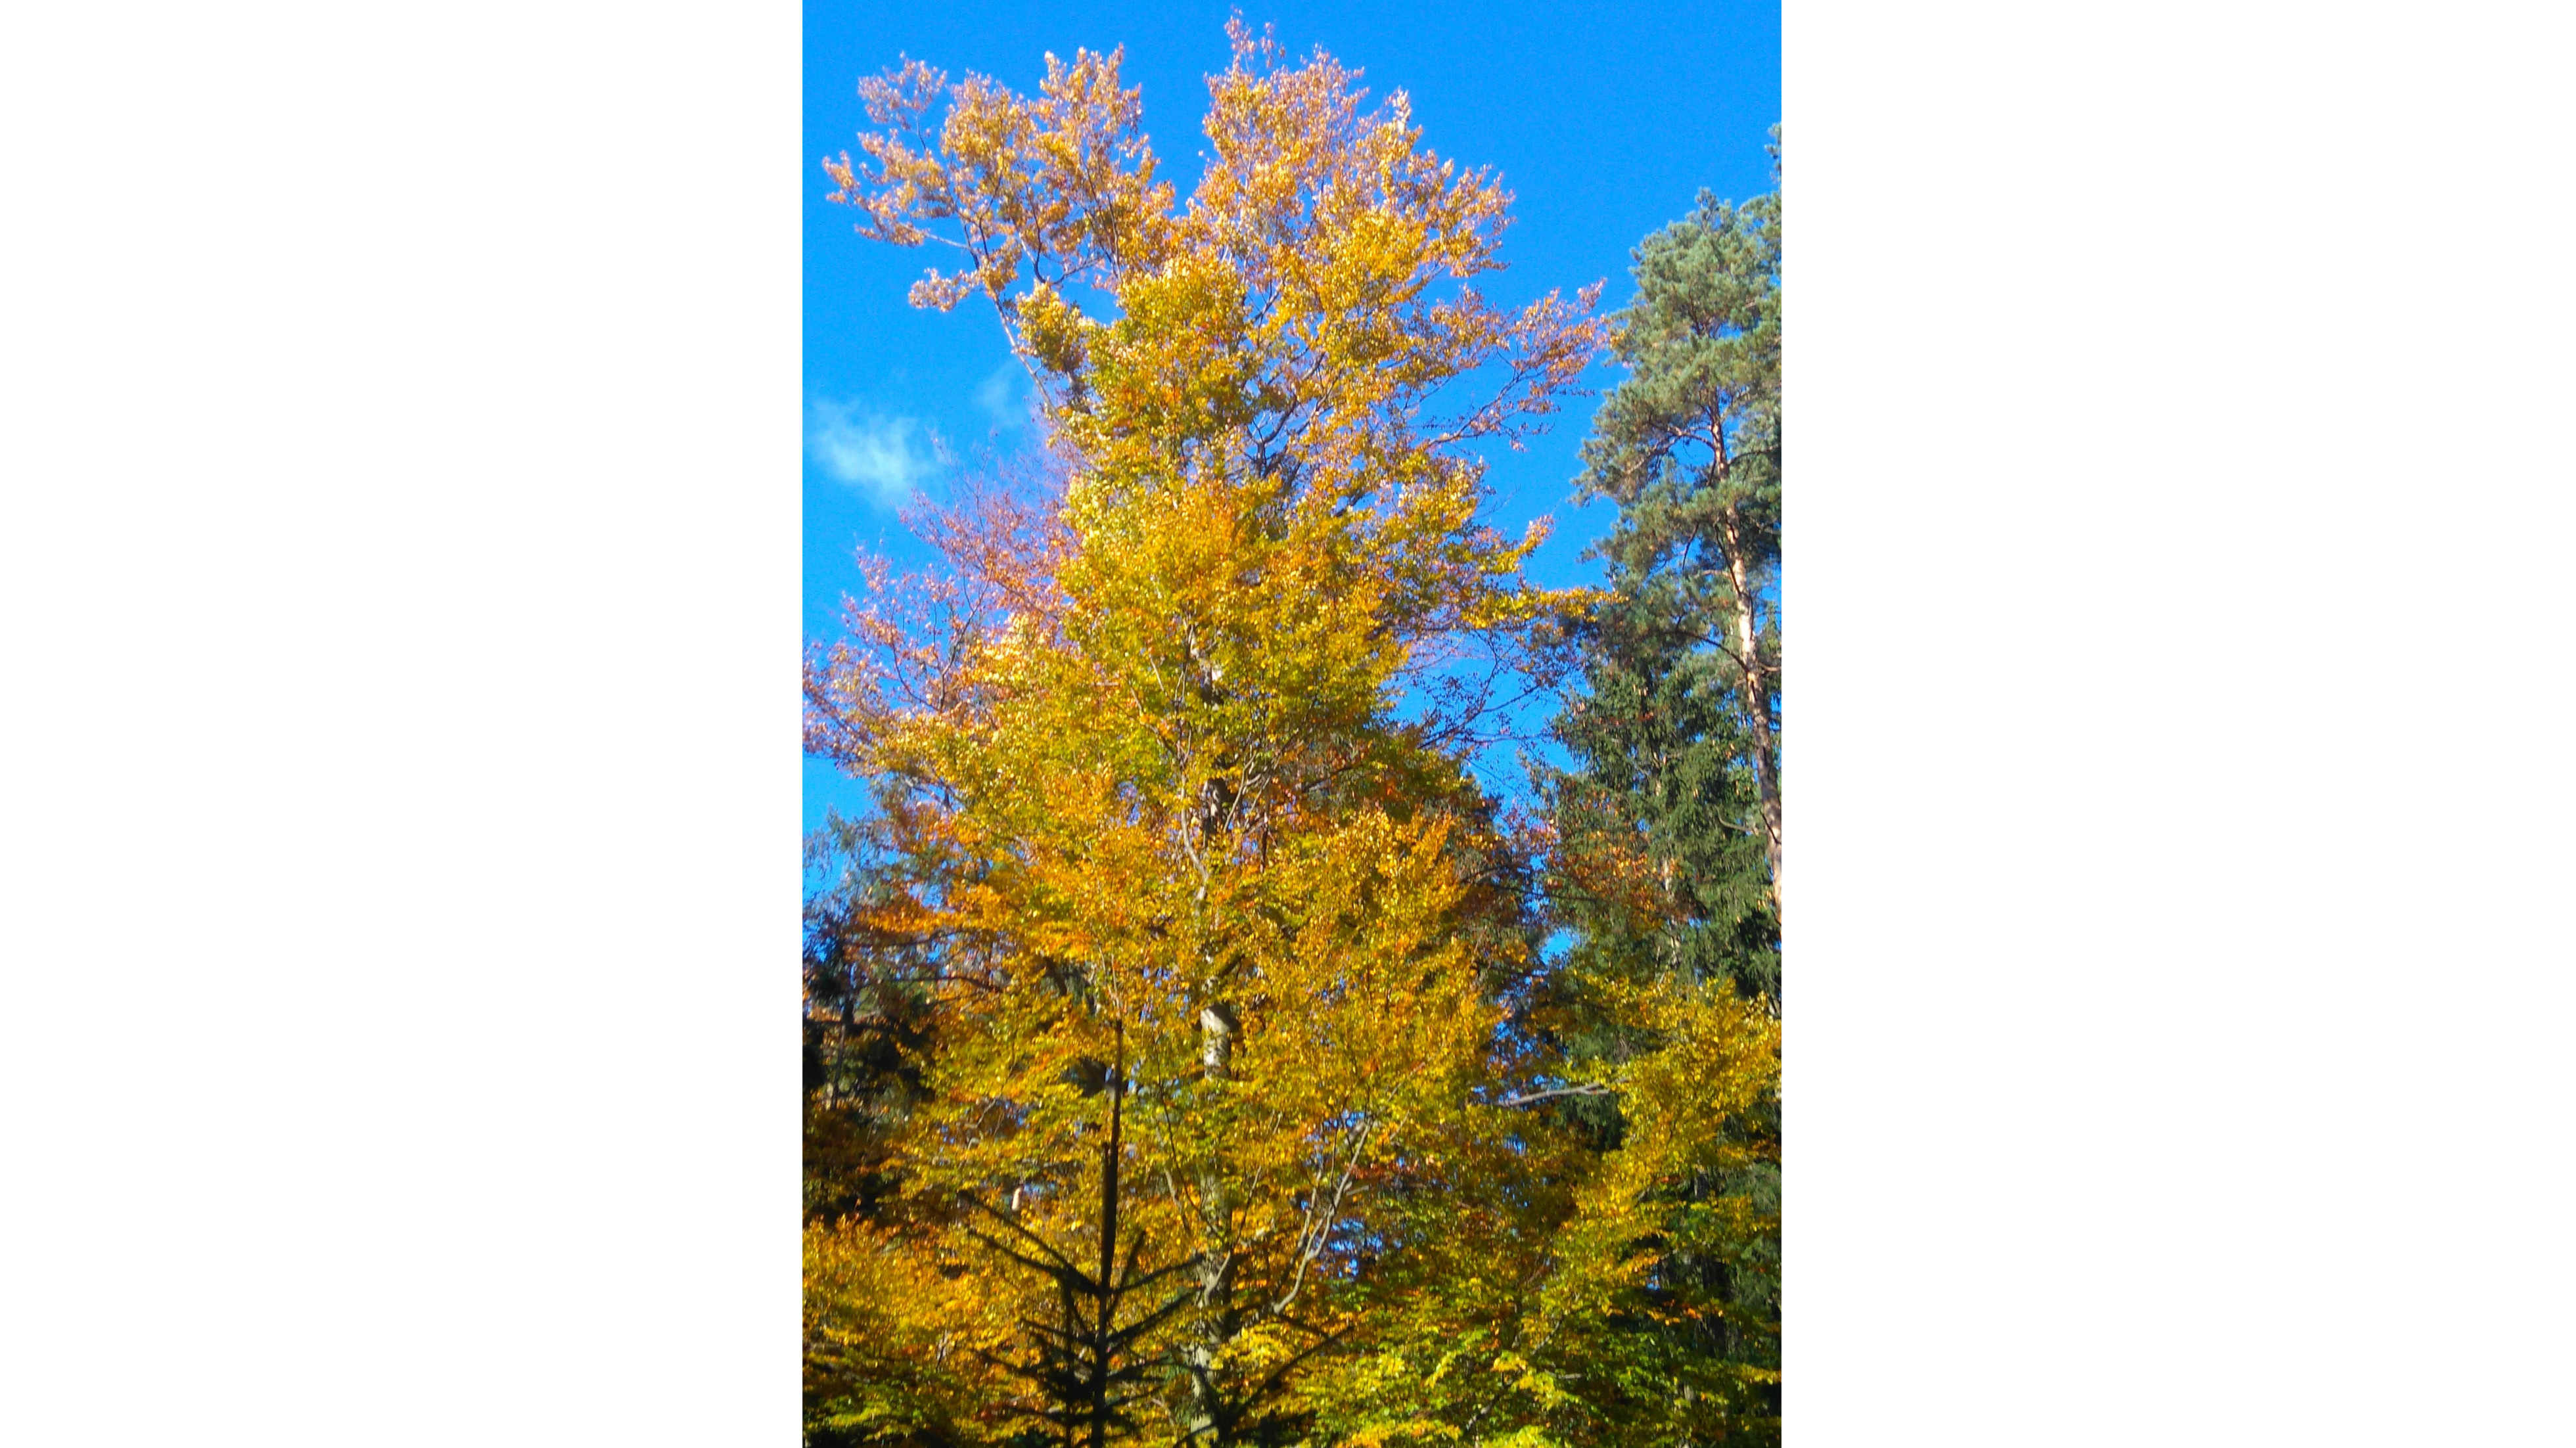 Baum mit gelbbraunen Blättern